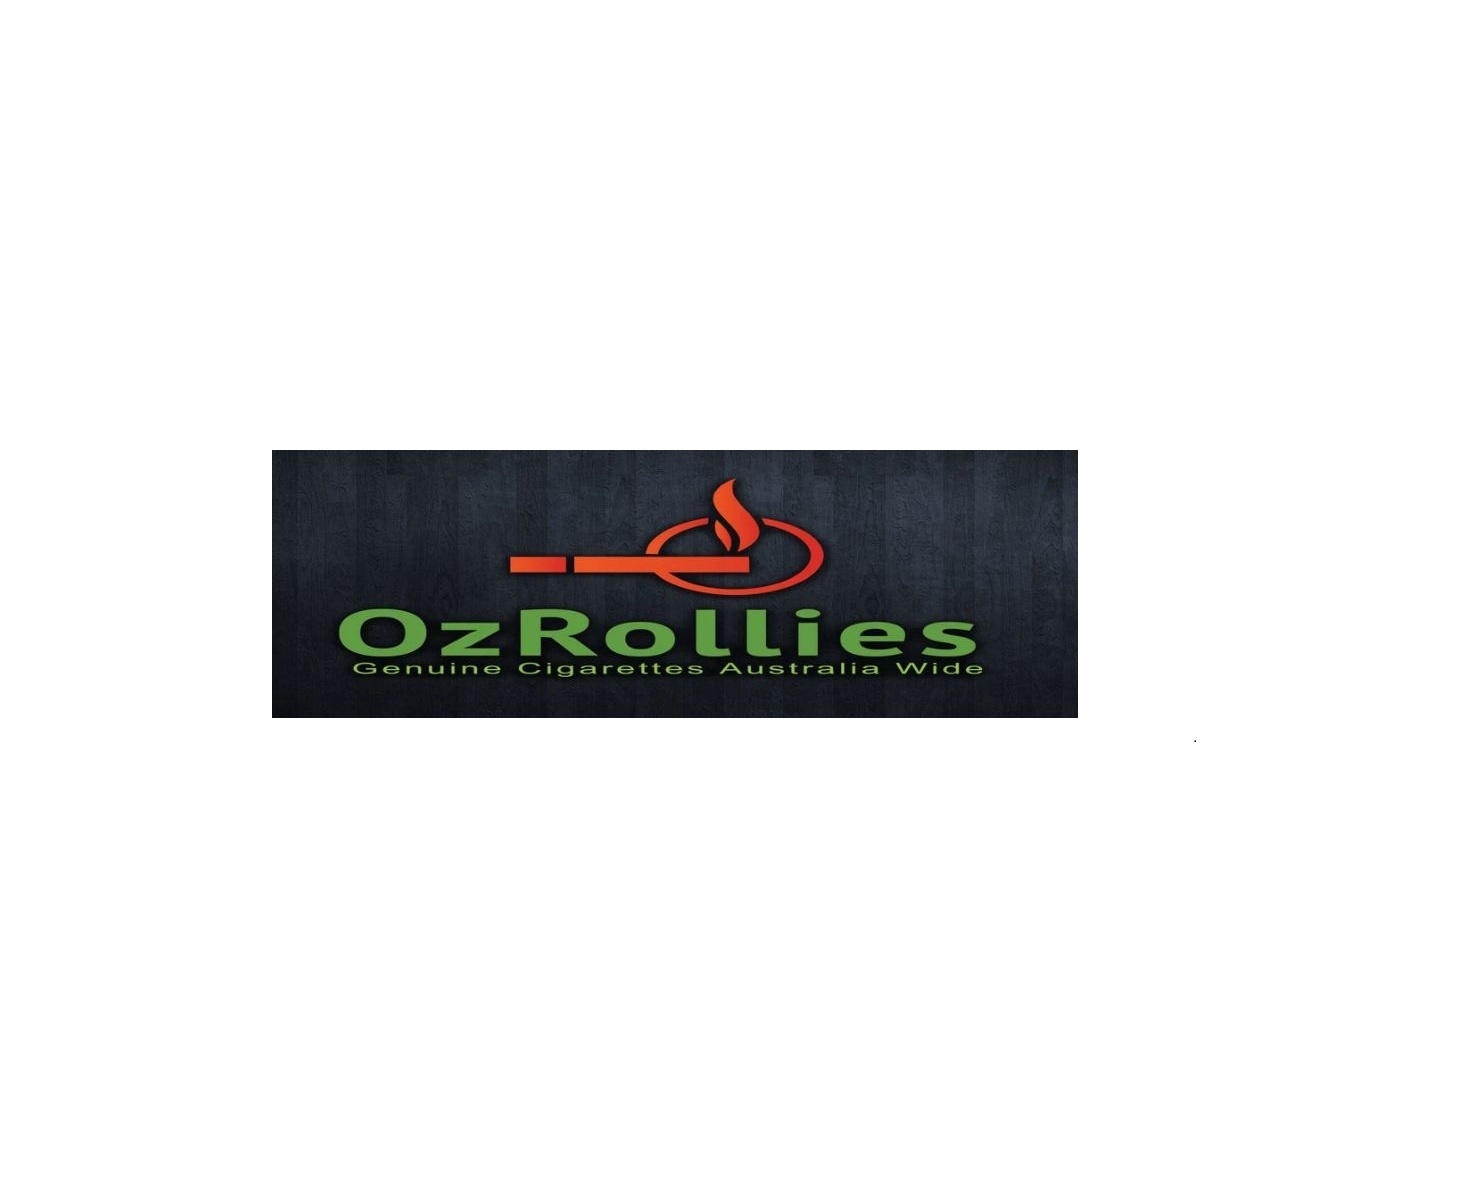 OzRollies